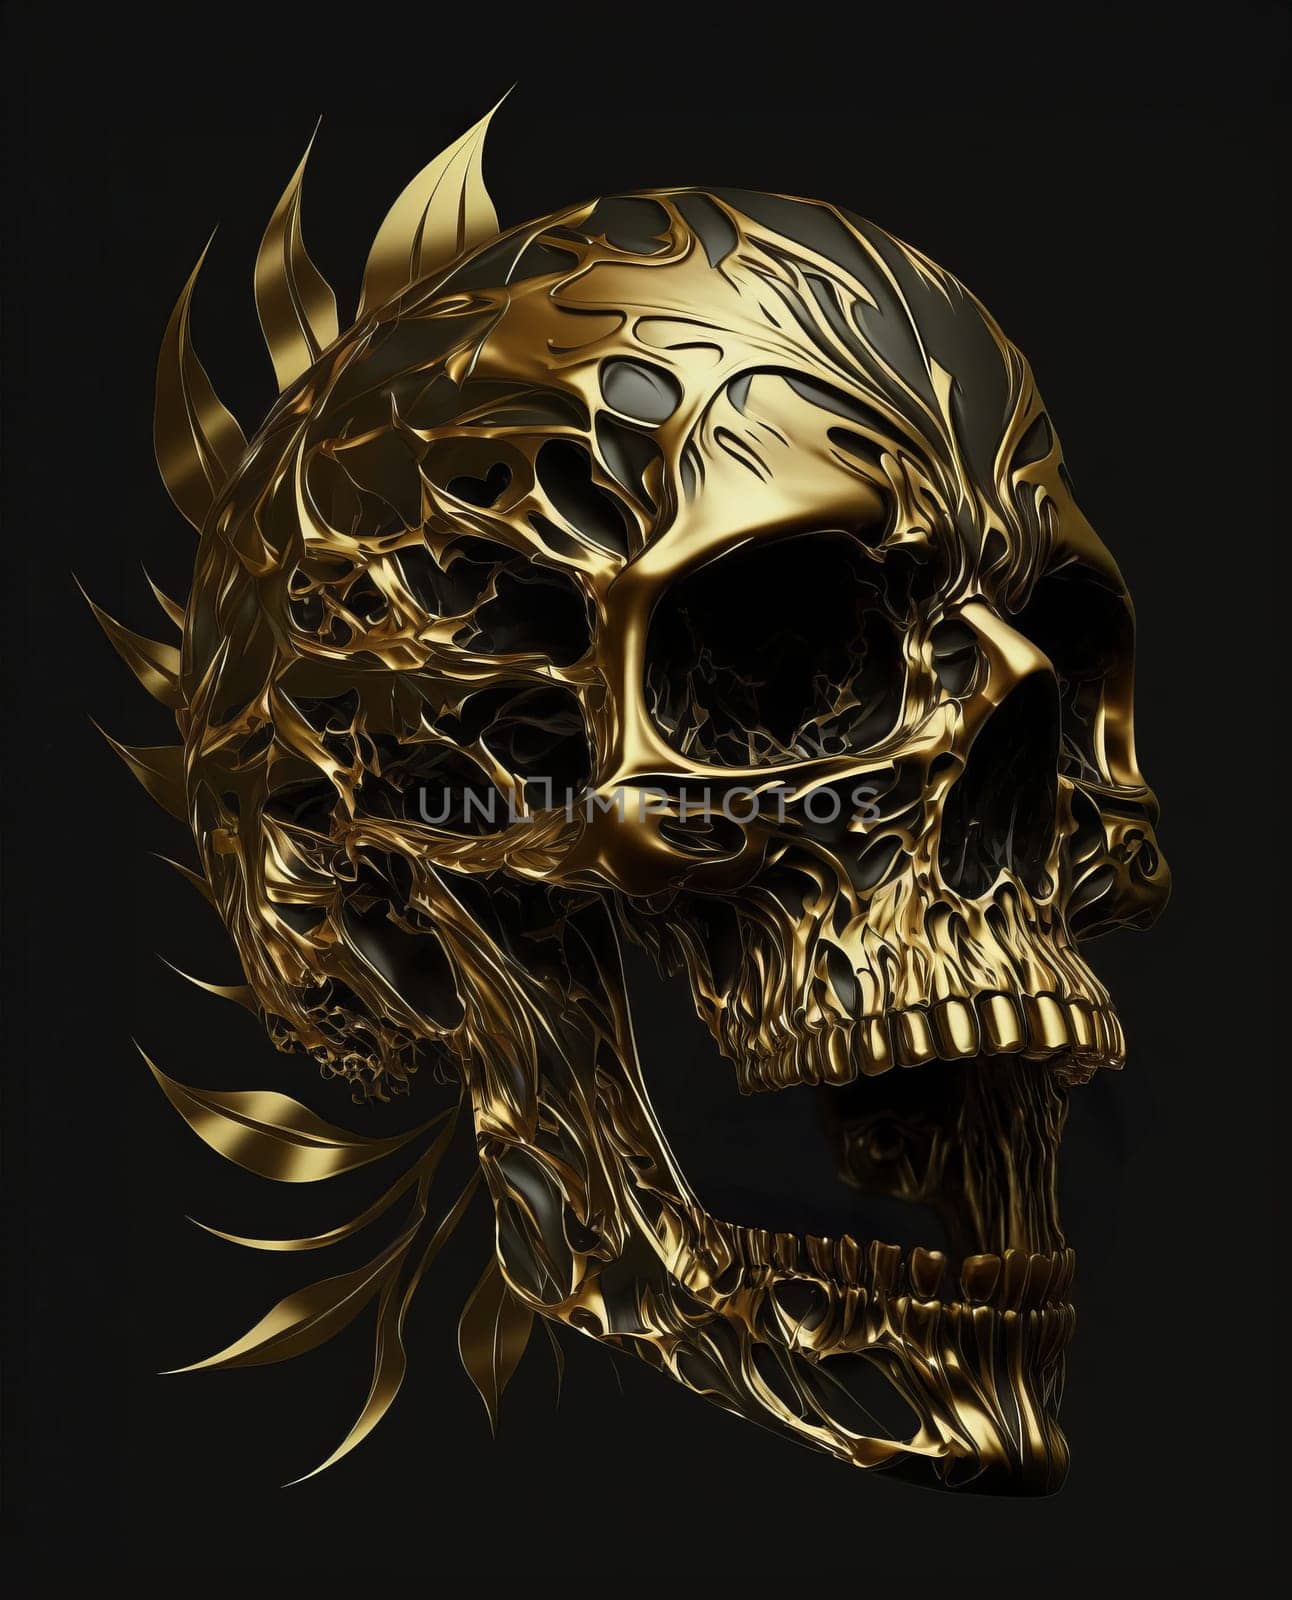 Gold detailed patterned skull on a dark background by studiodav